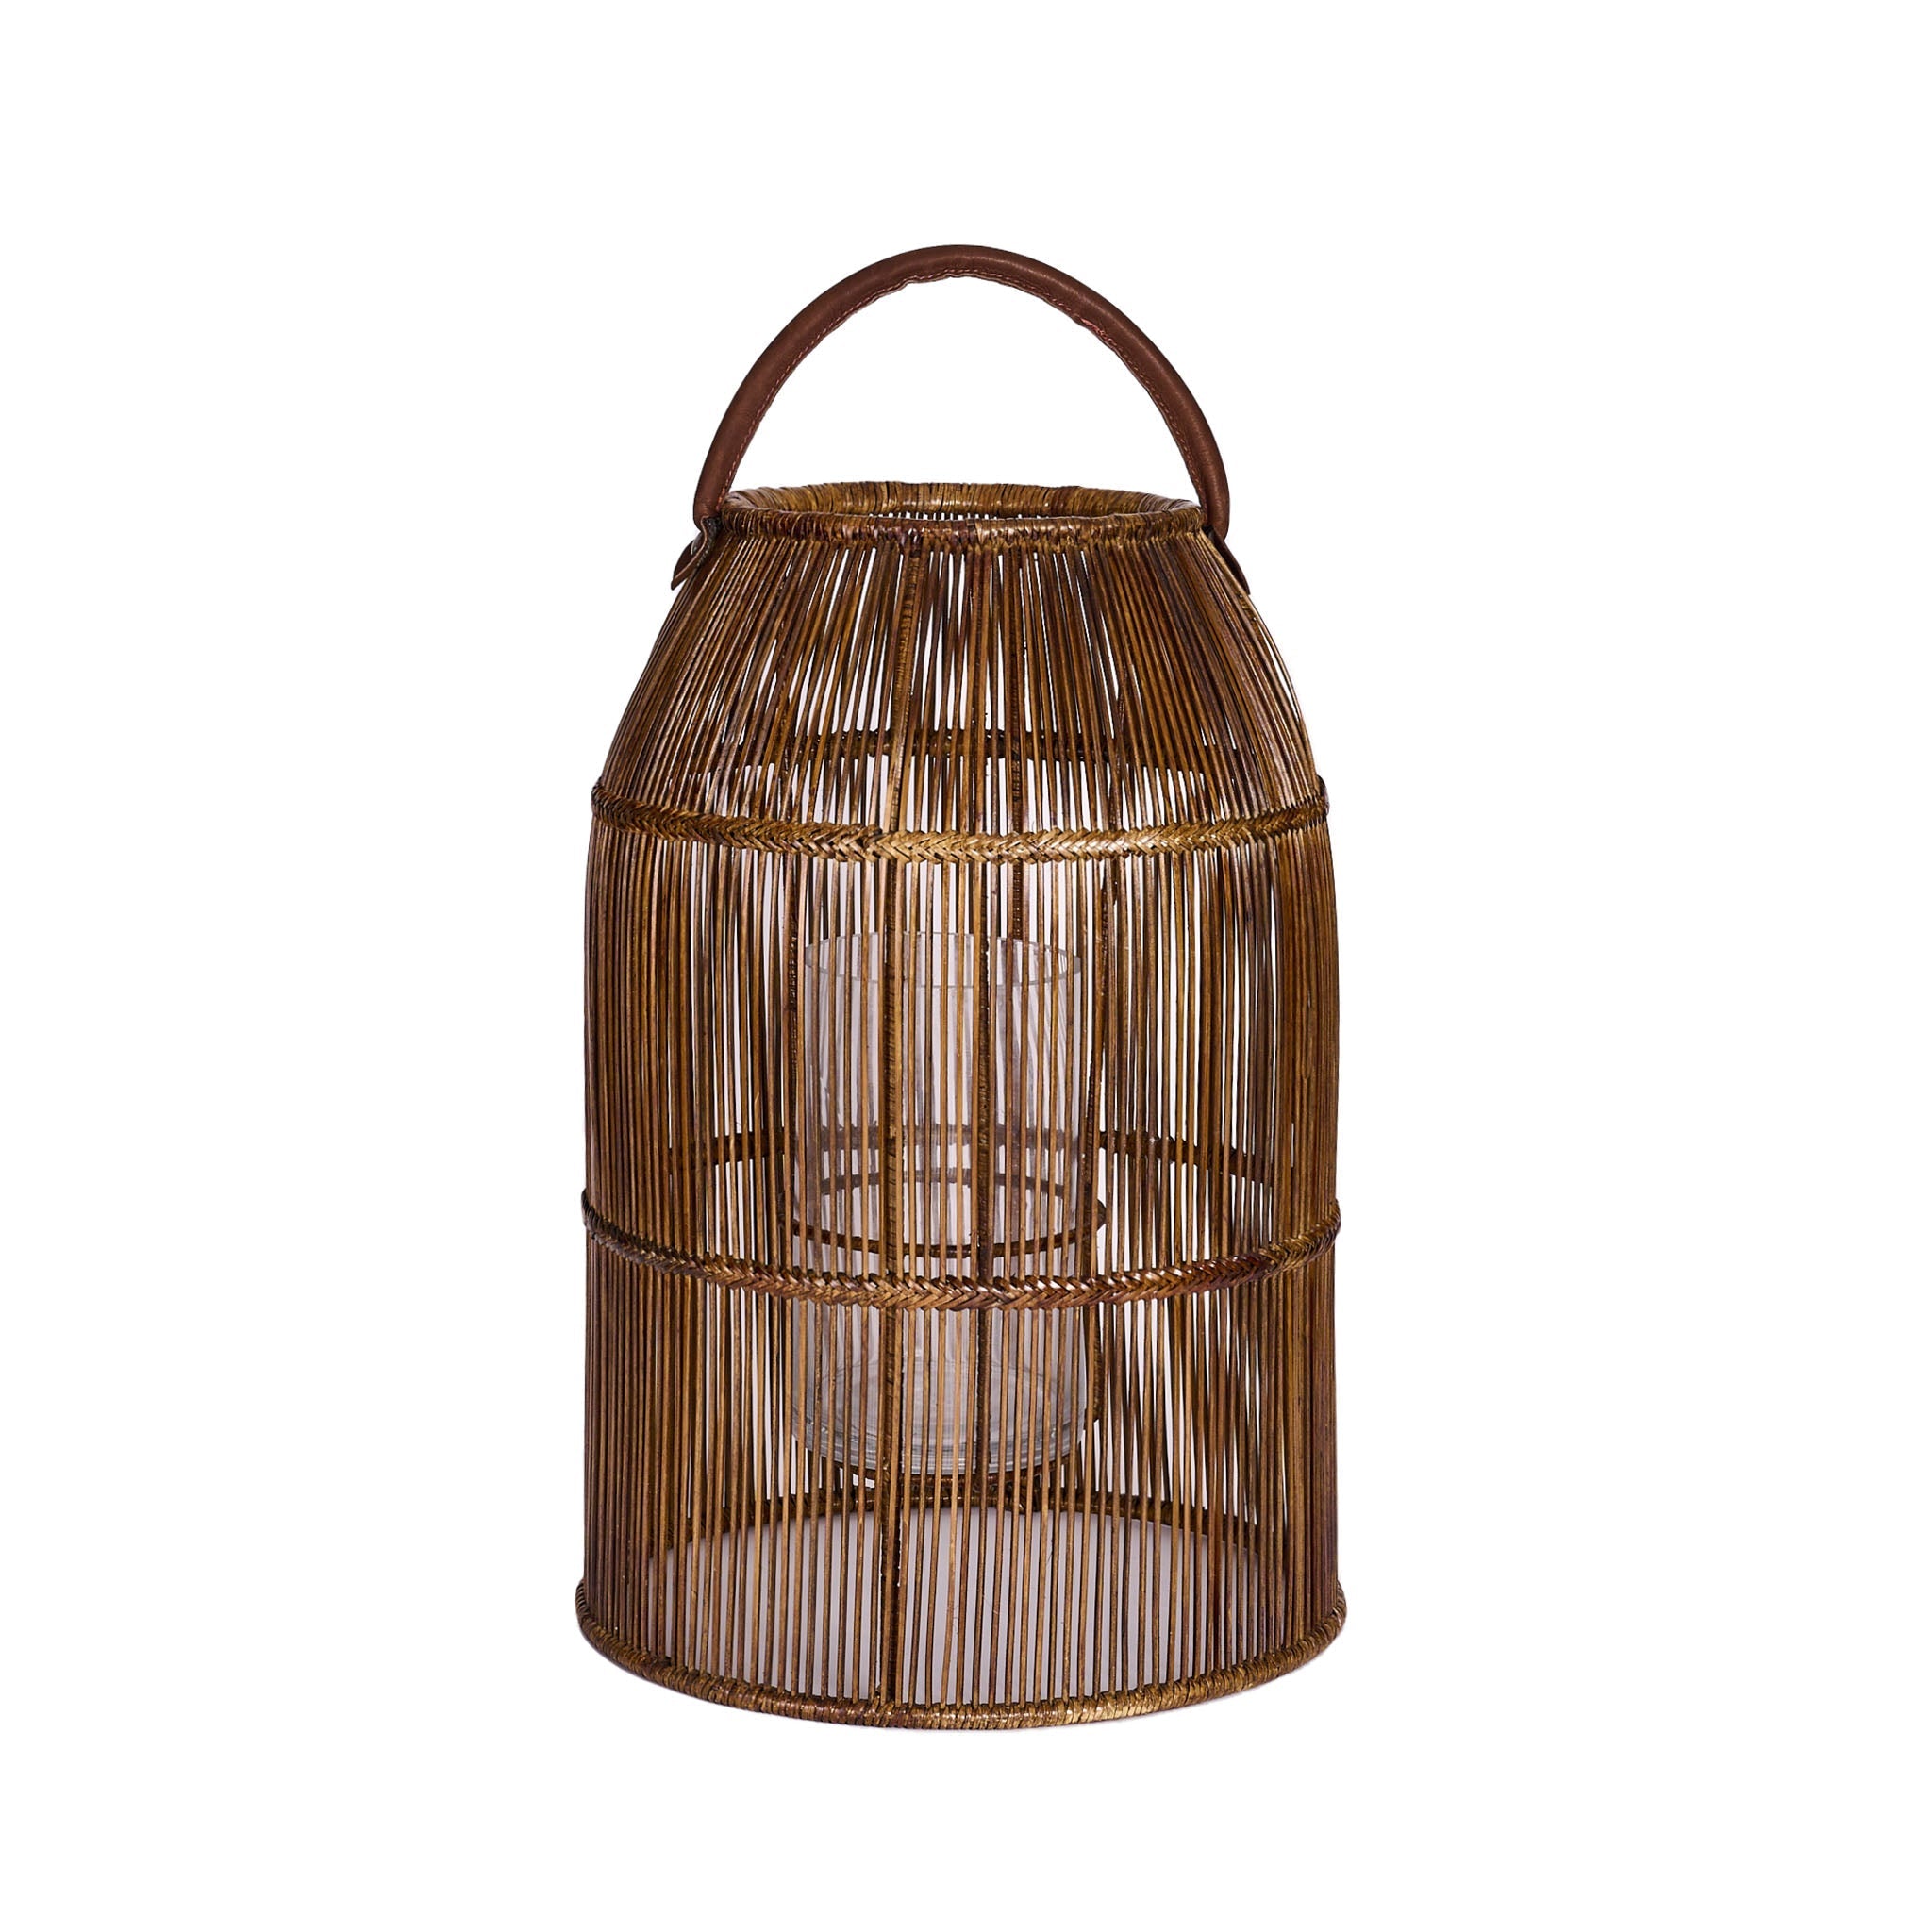 Rangoon Lantern in rattan and bamboo